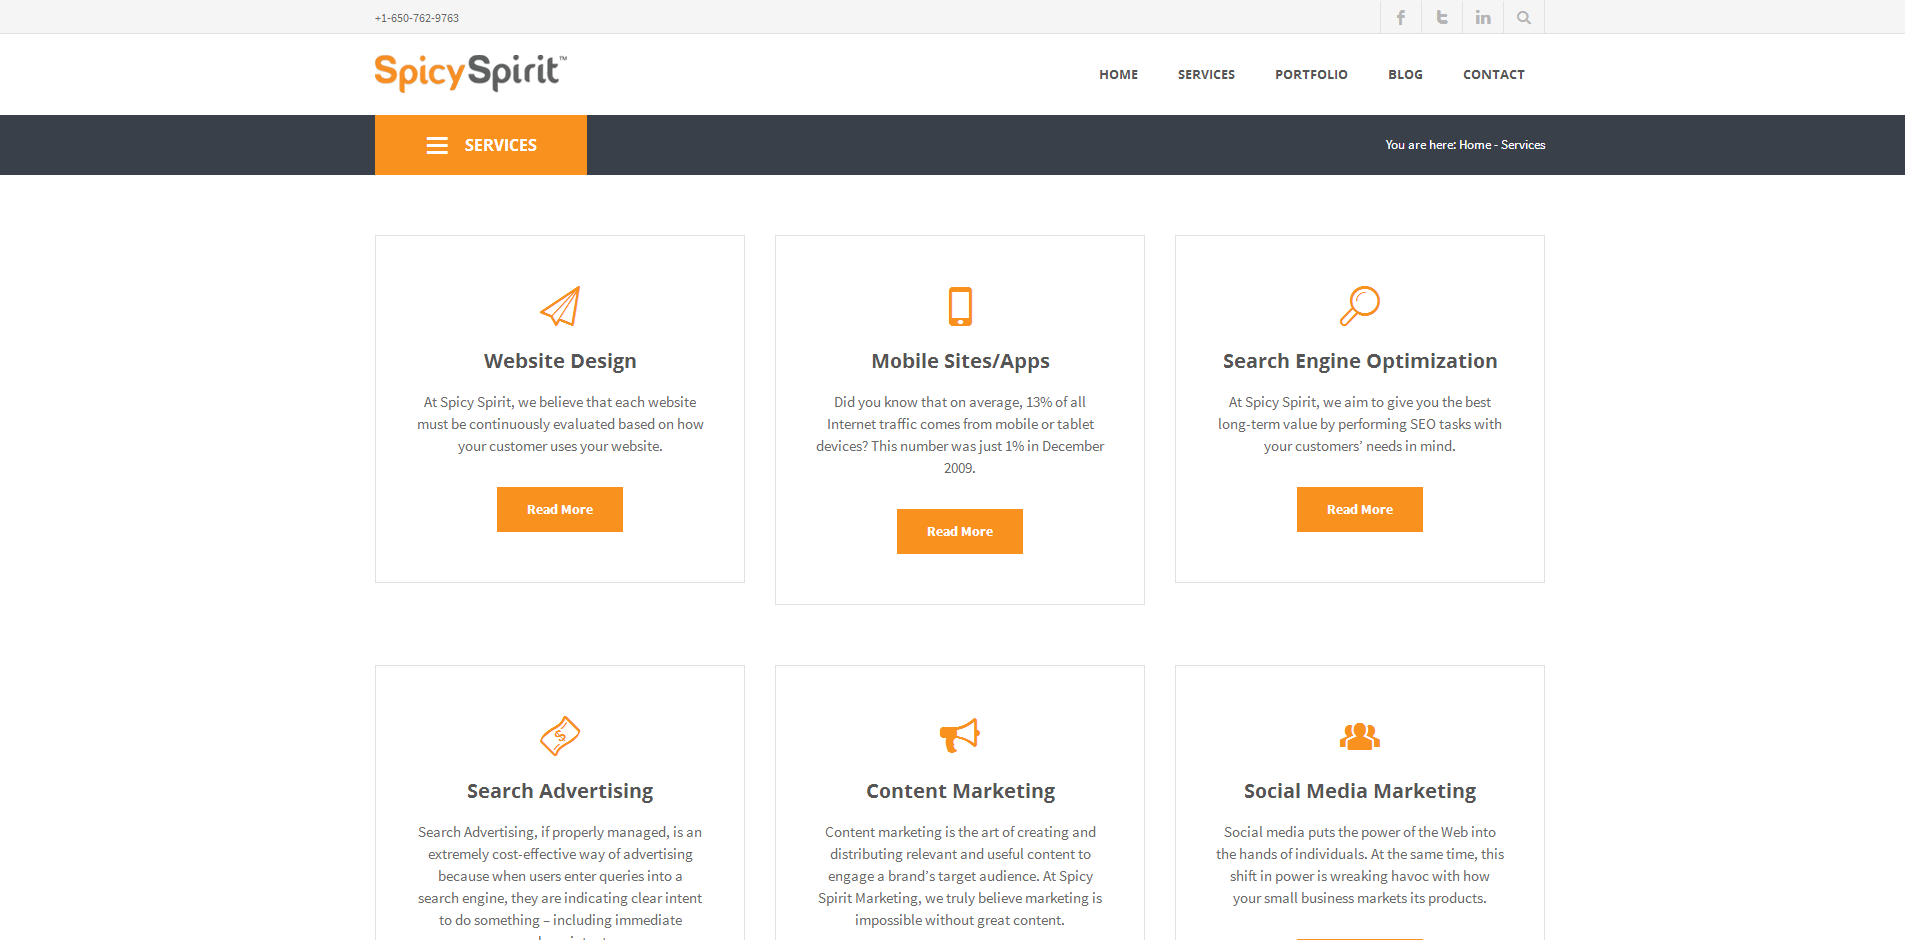 SpicySpirit Services